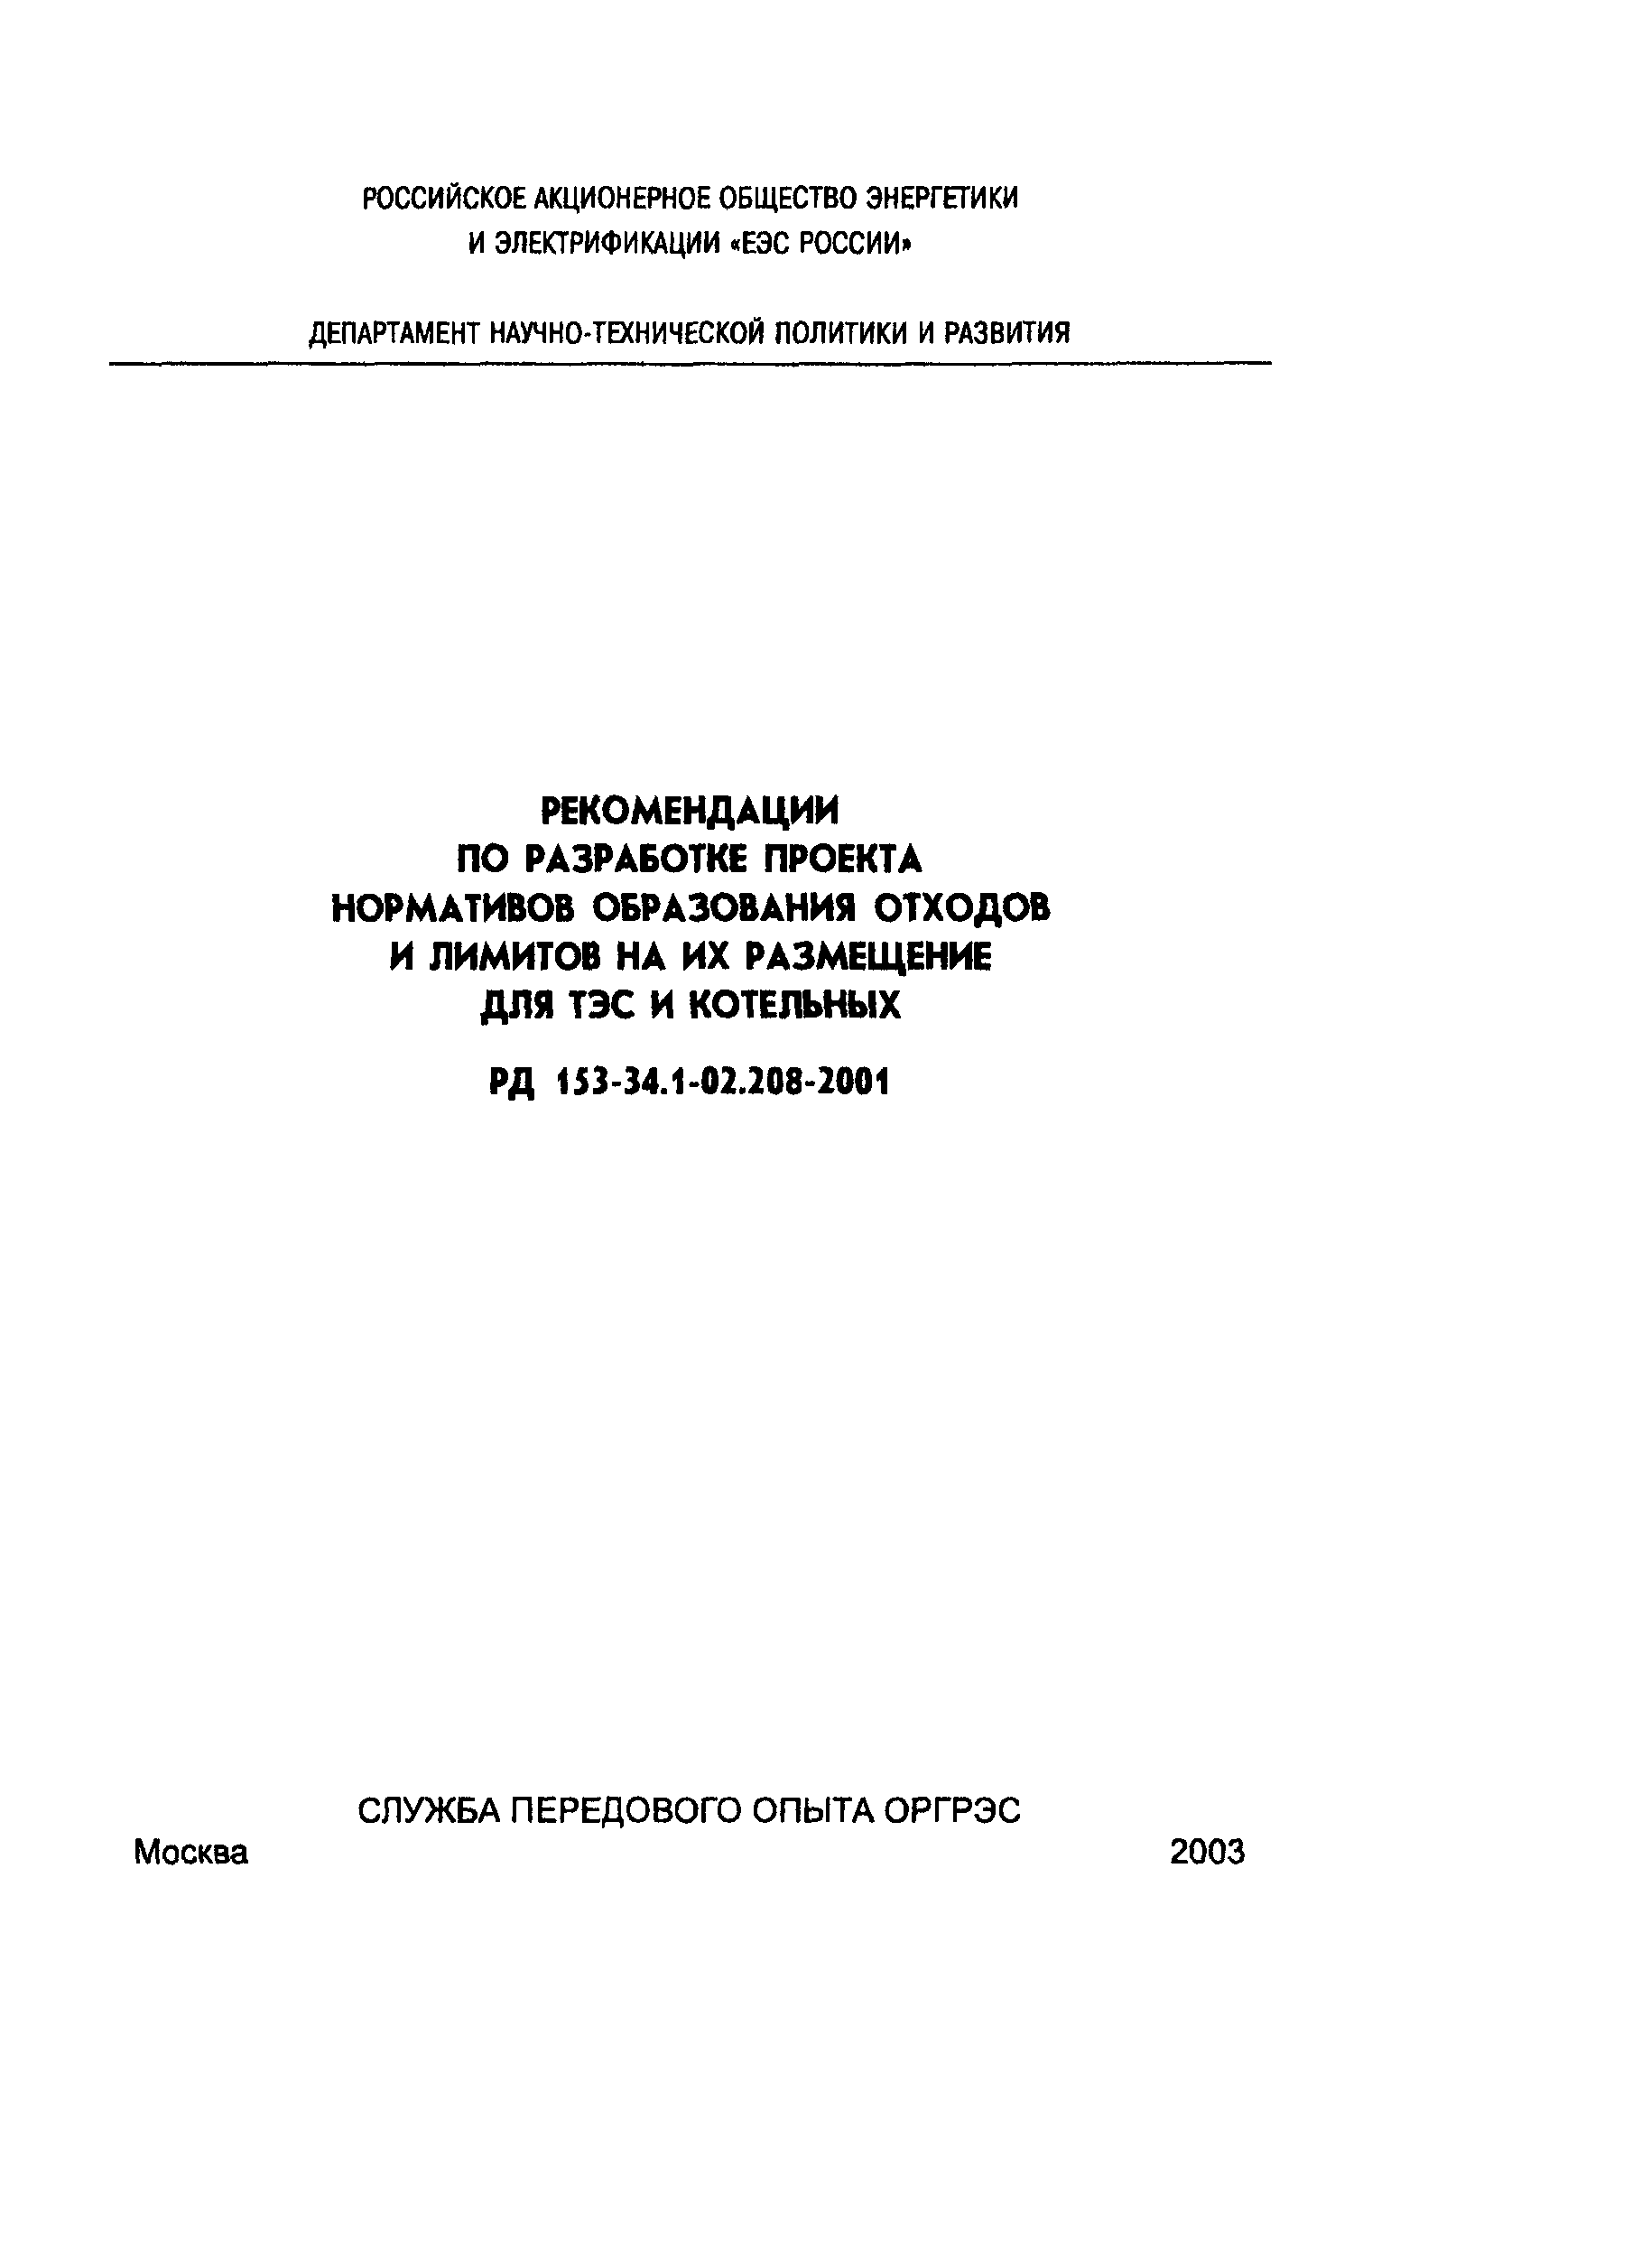 РД 153-34.1-02.208-2001